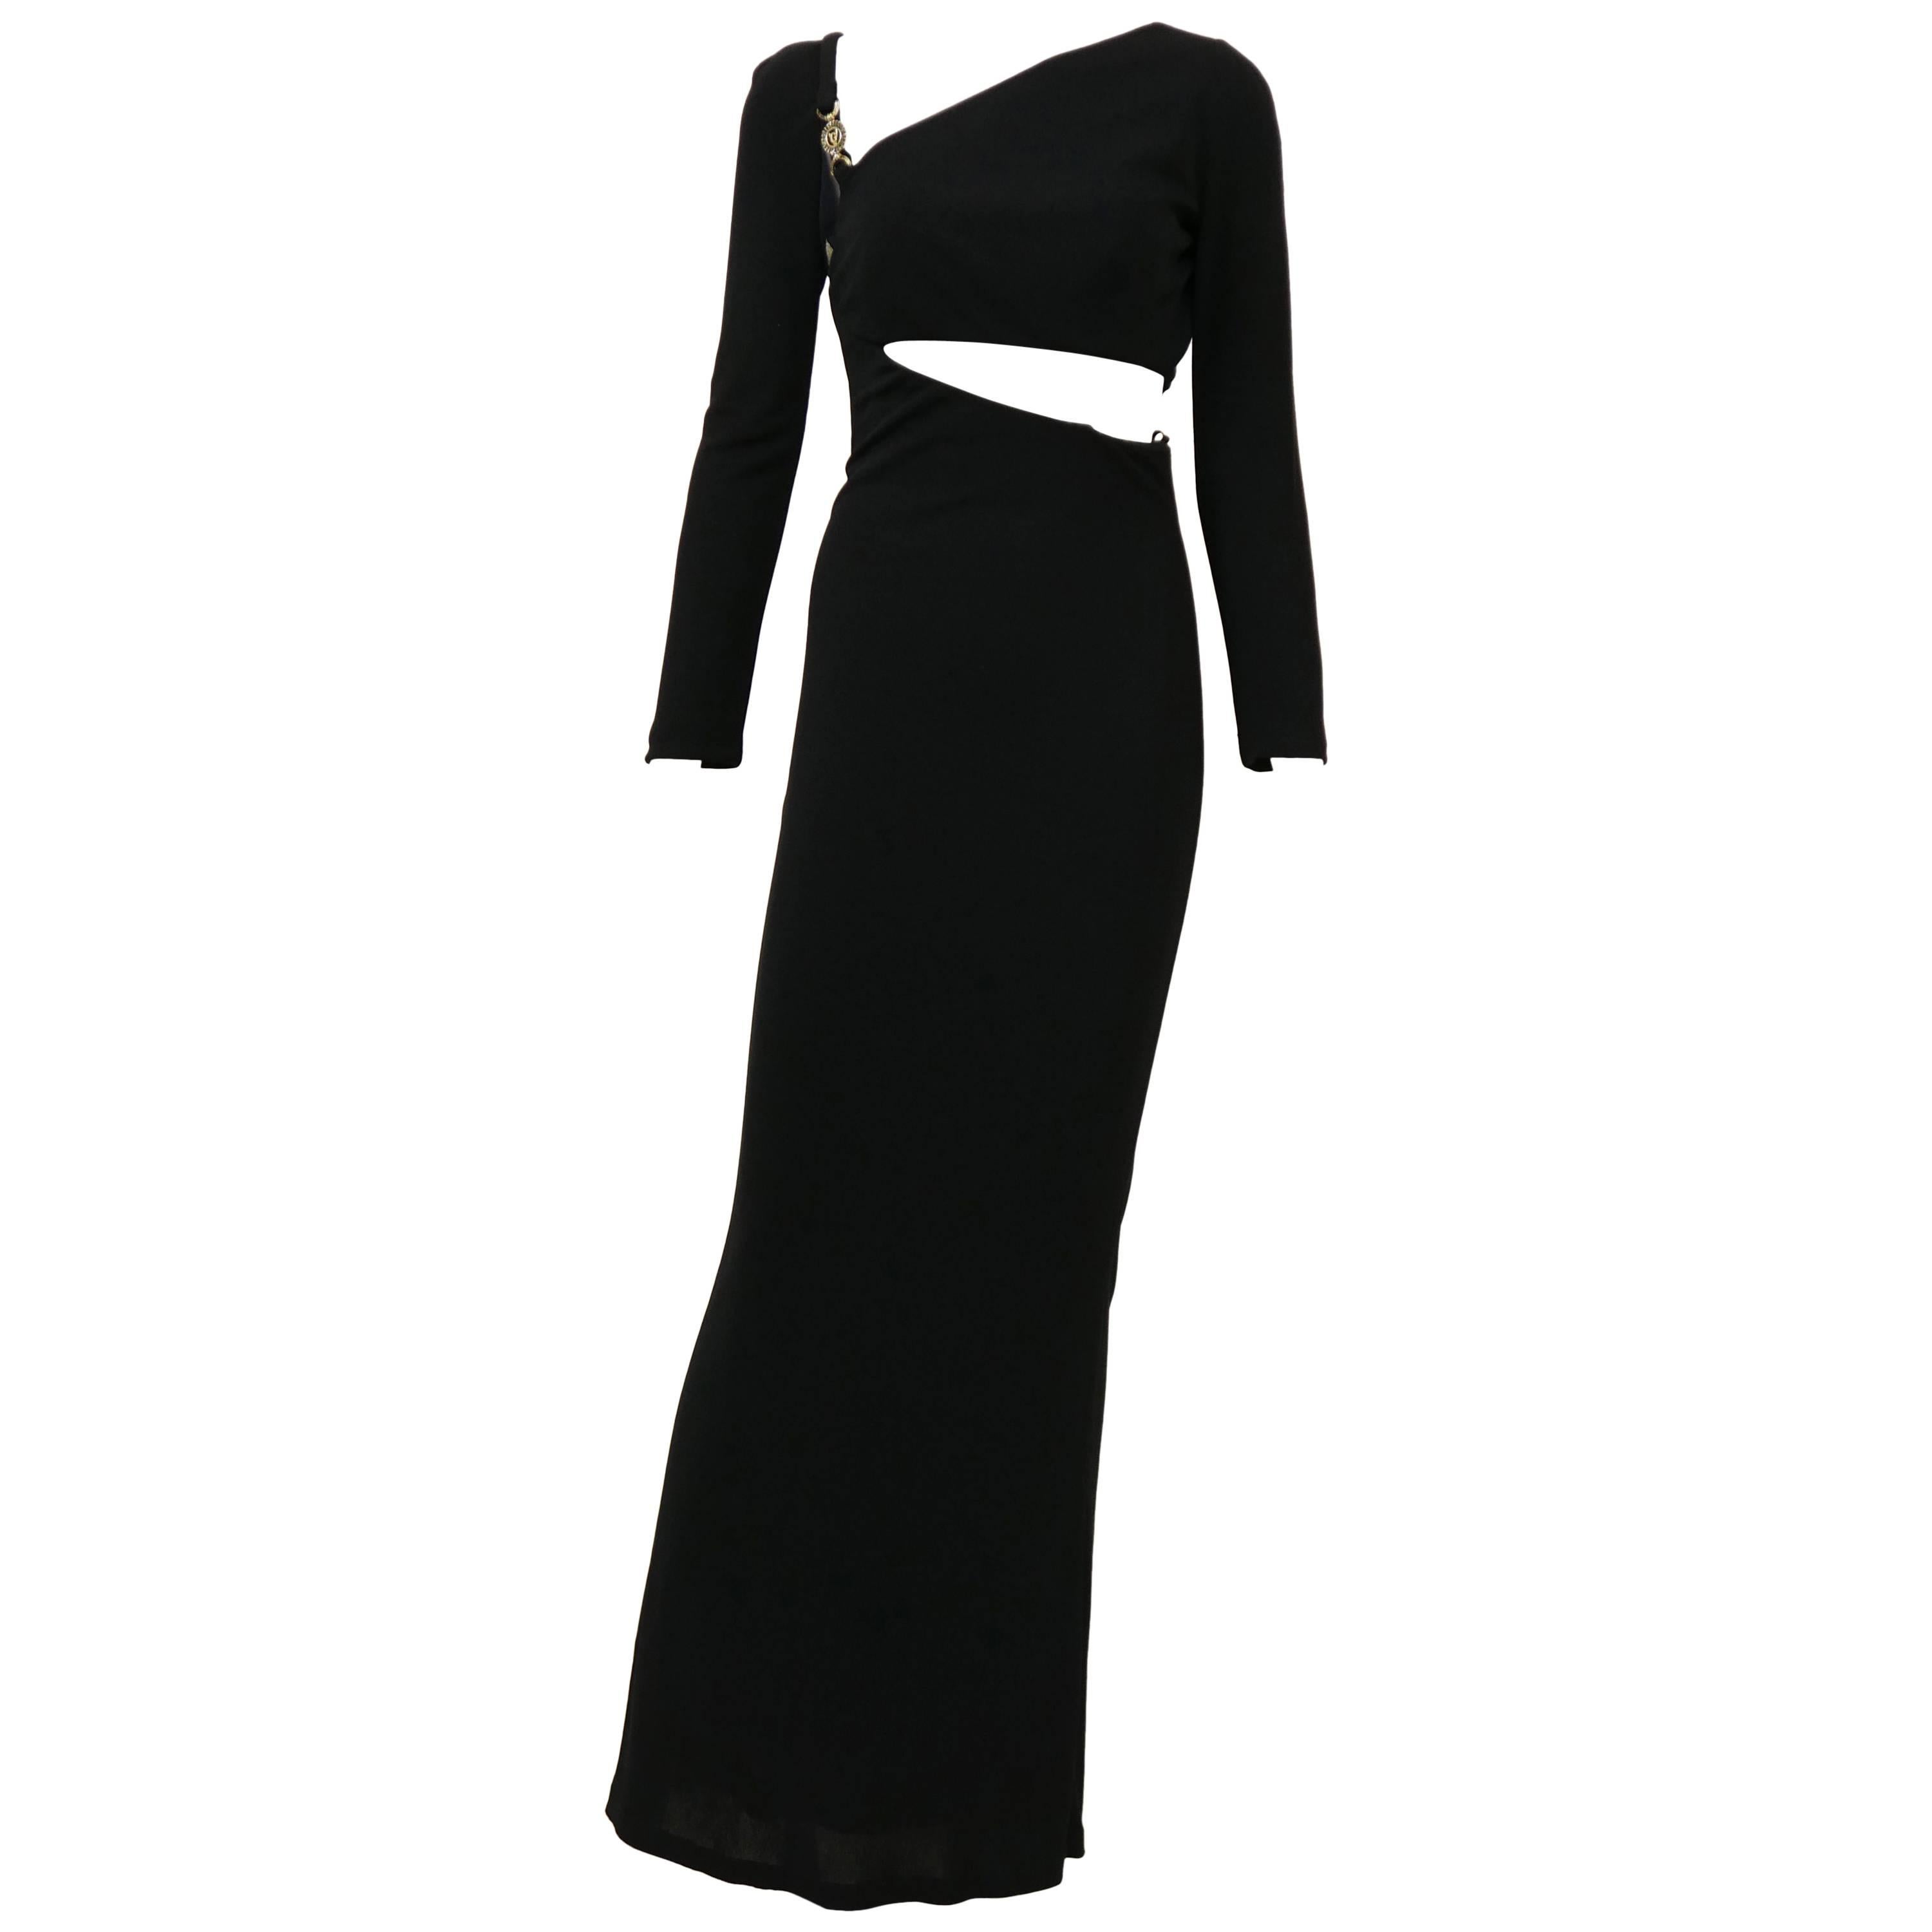 1980s GIANNI VERSACE Black Long Asymmetric Dress